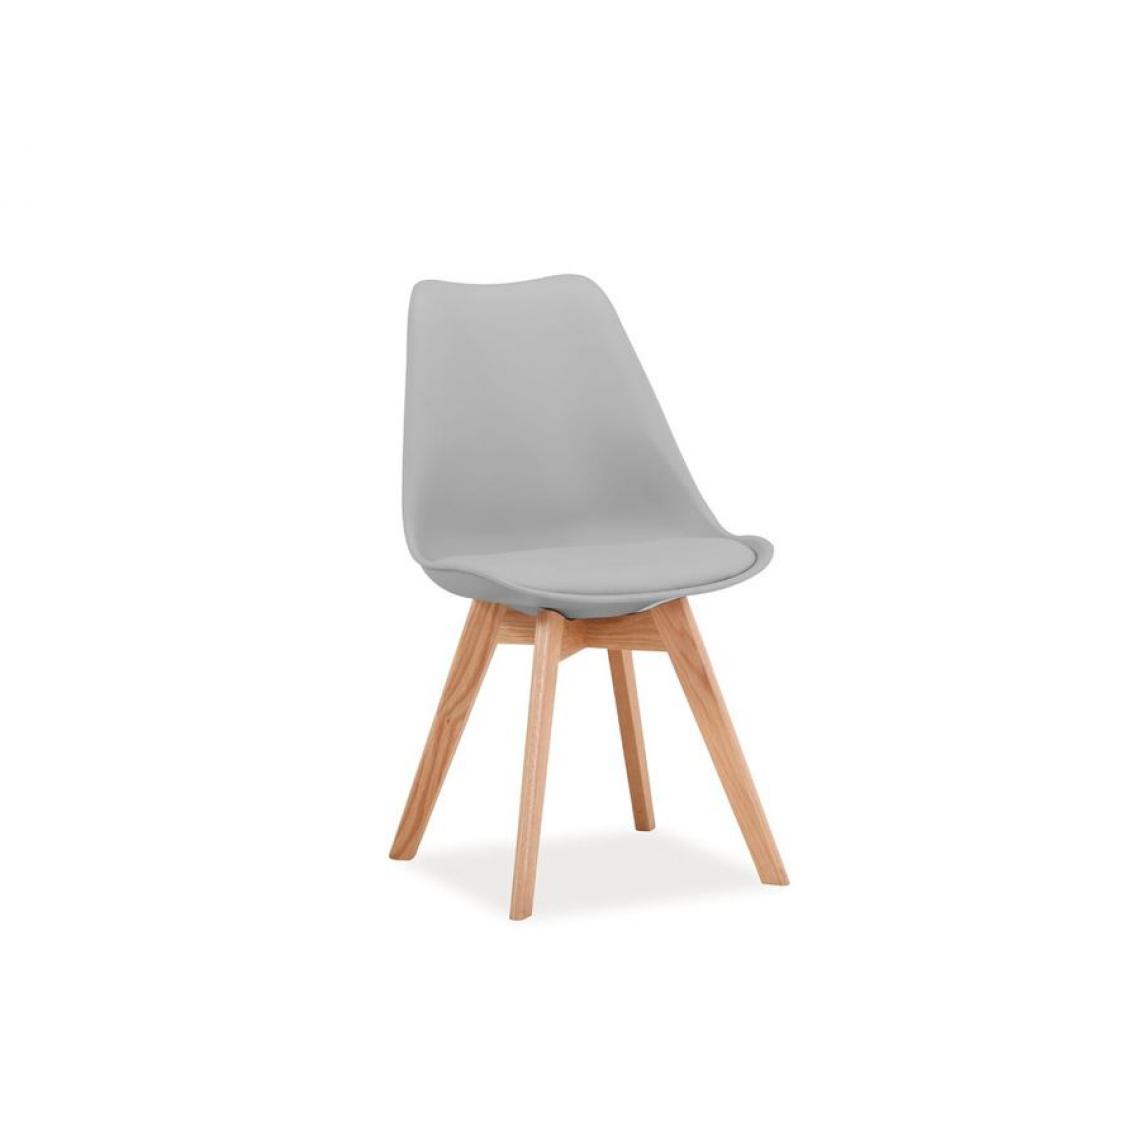 Hucoco - KRIL | Chaise style scandinave salle à manger salon bureau | 83x49x43cm | PP + similicuir + bois | Chaise moderne - Gris - Chaises